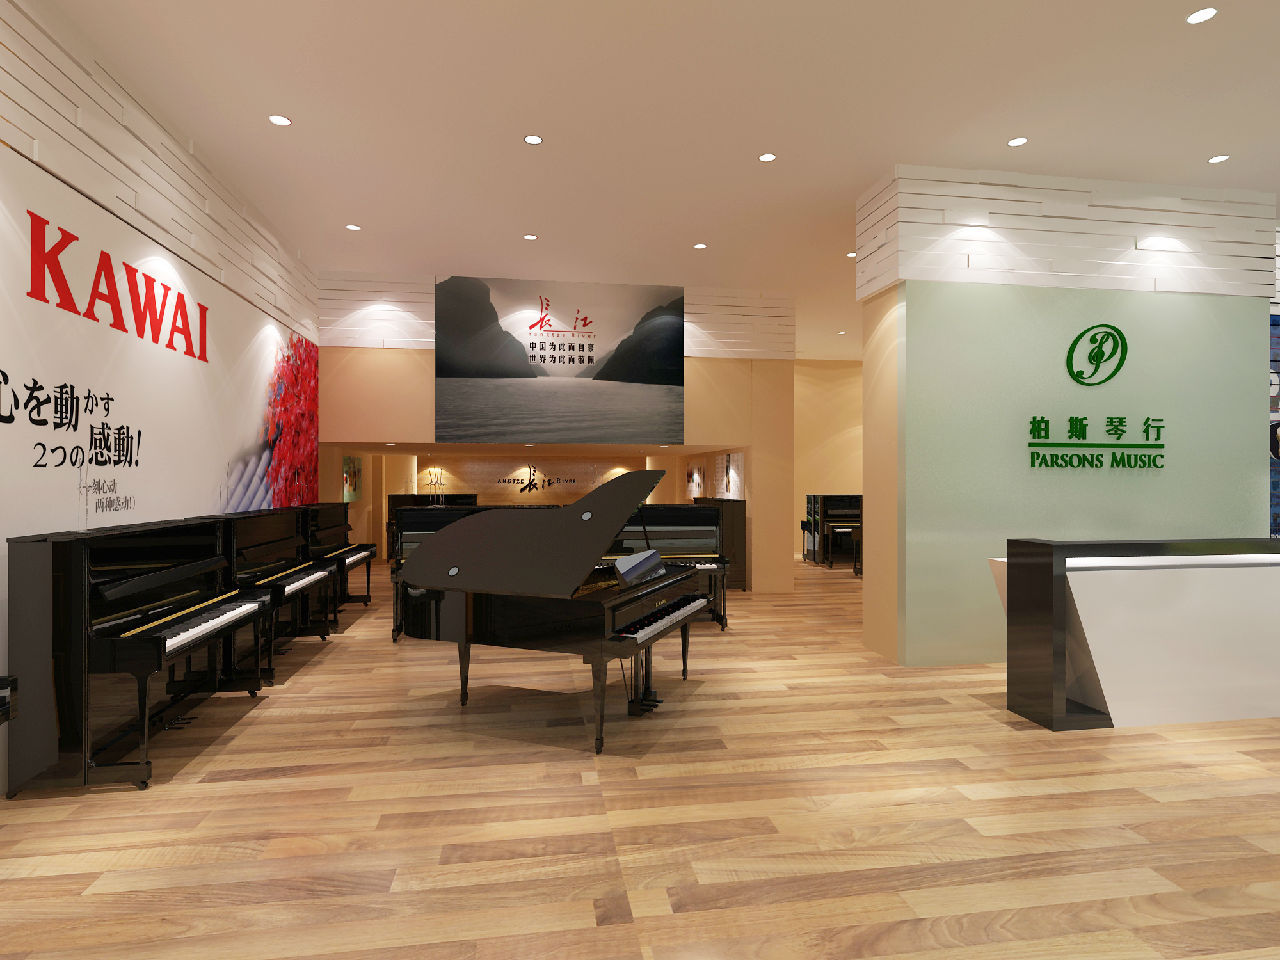 权威发布 | 柏斯琴行“全球三十强乐器零售商”中国第一 世界第七